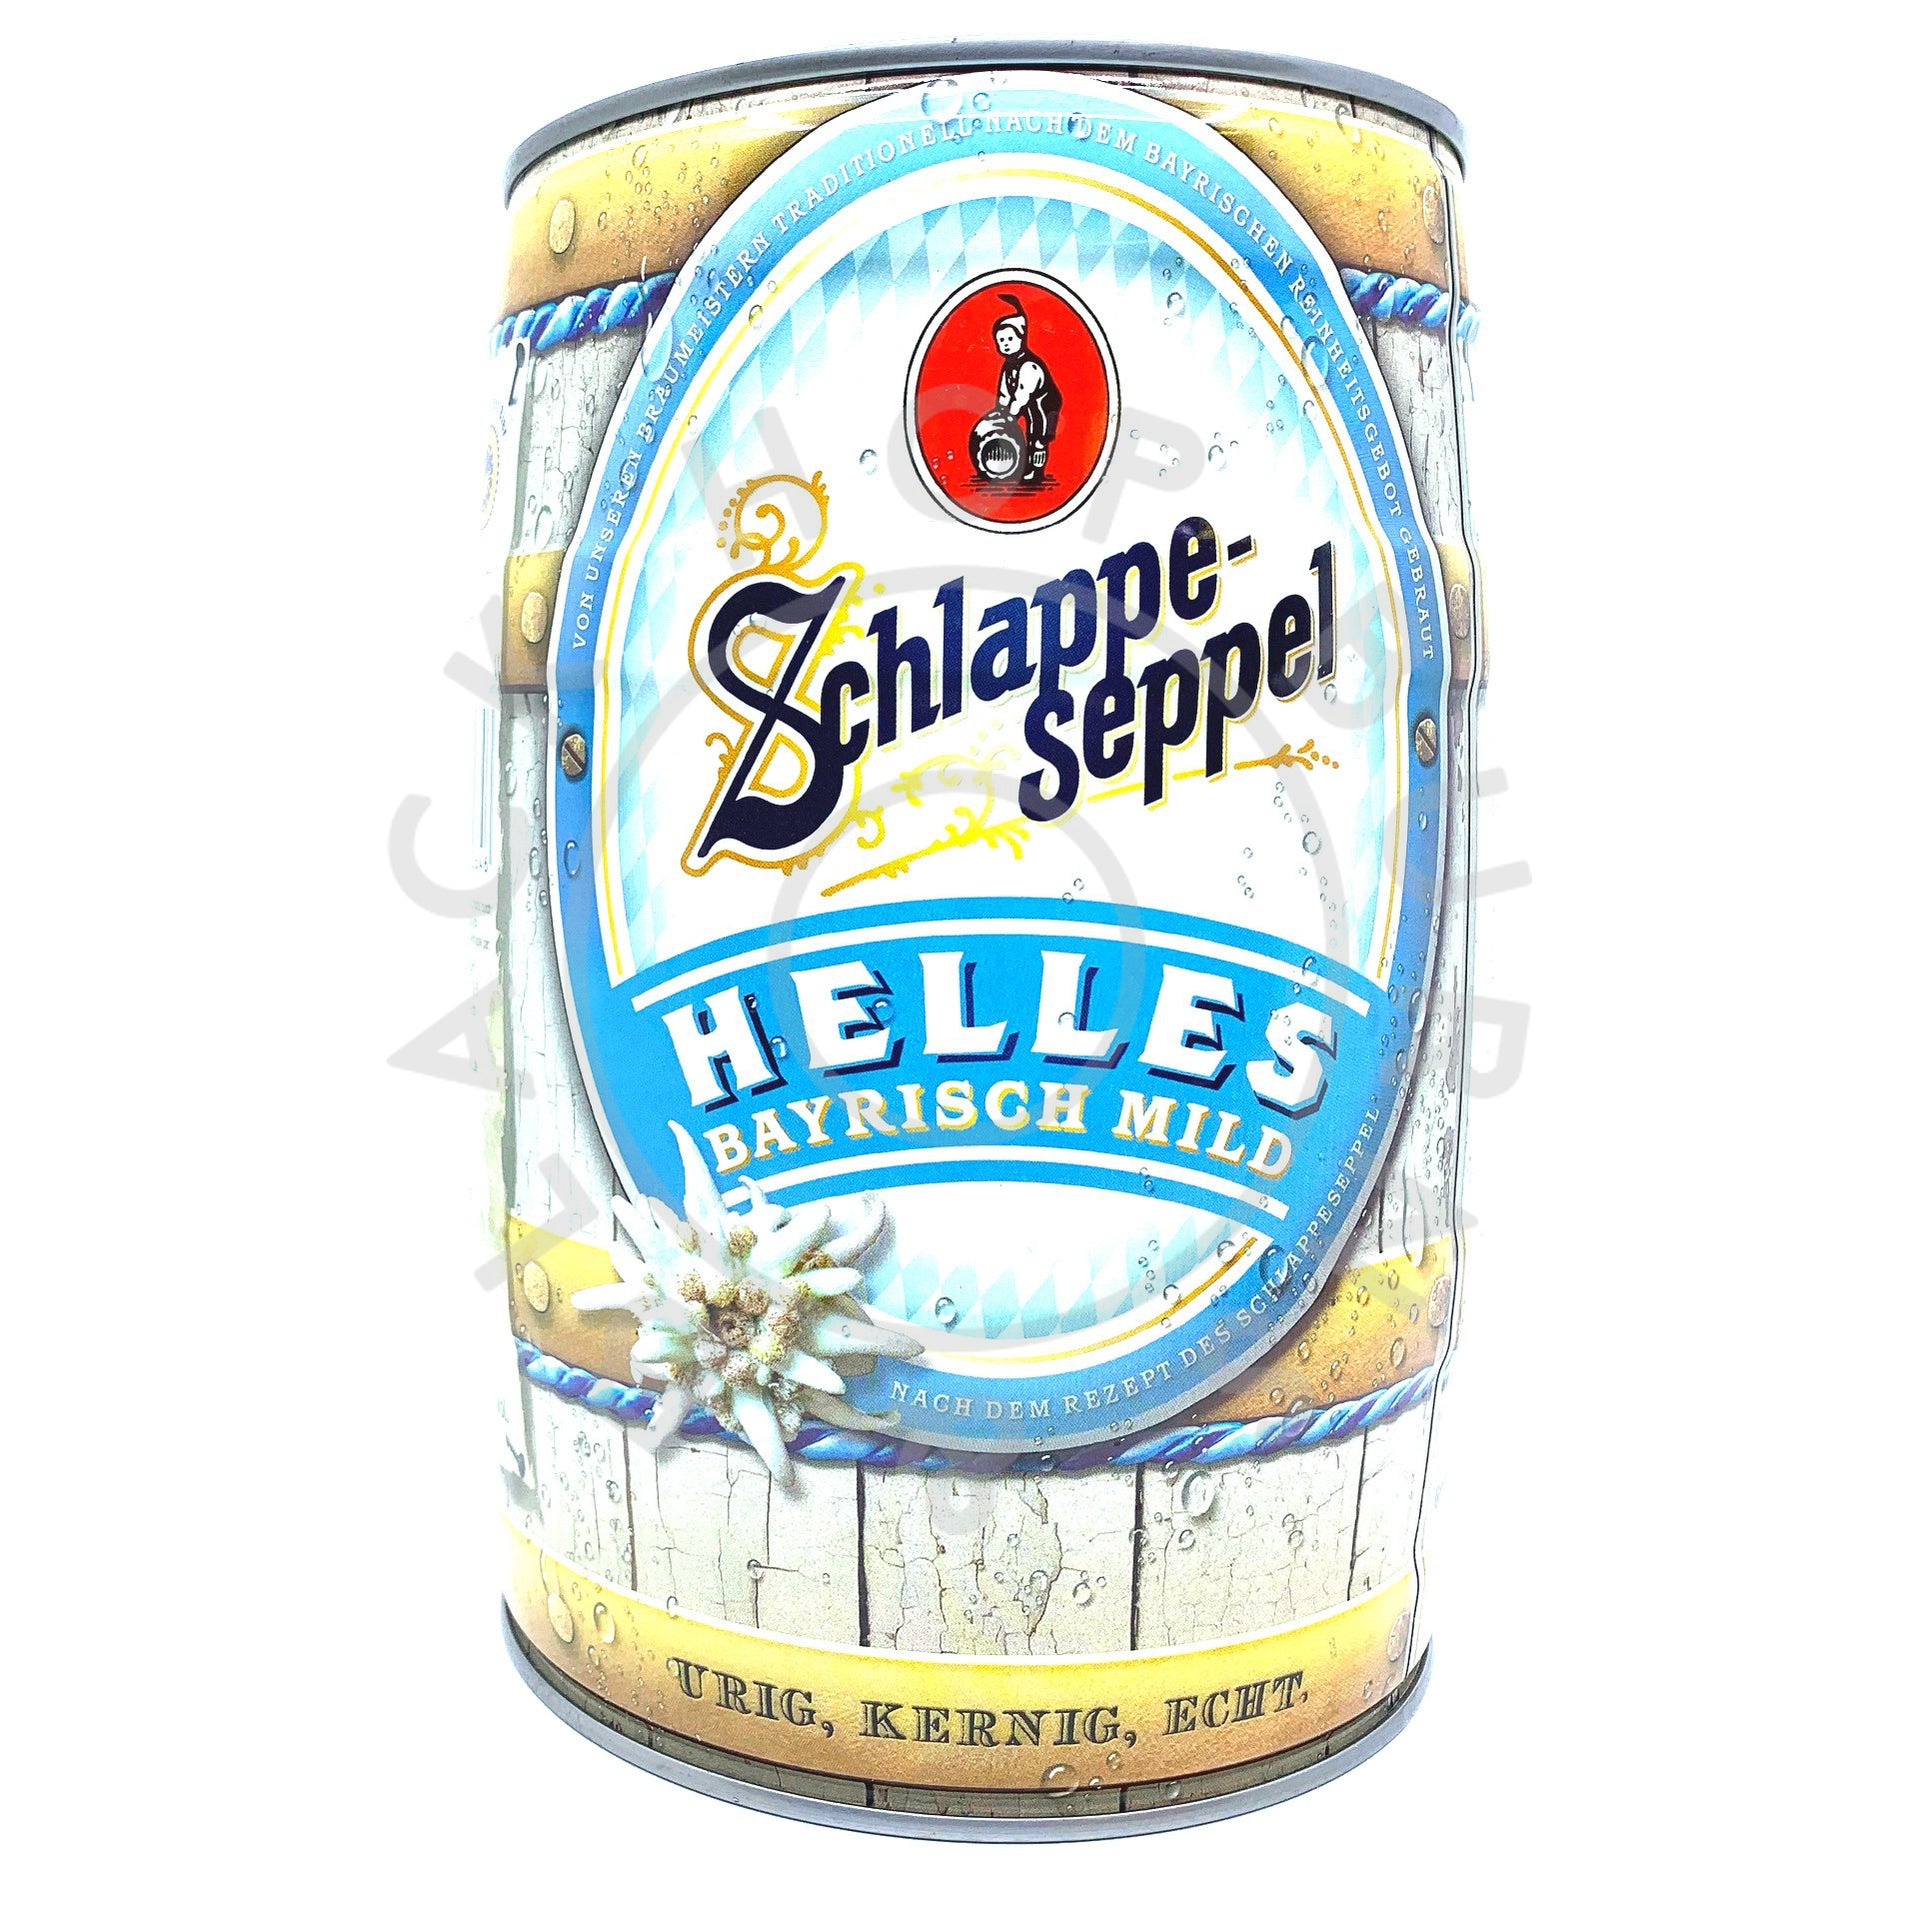 Eder & Heylands Schlappeseppel Helles 4.8% minikeg (5-litre)-Hop Burns & Black